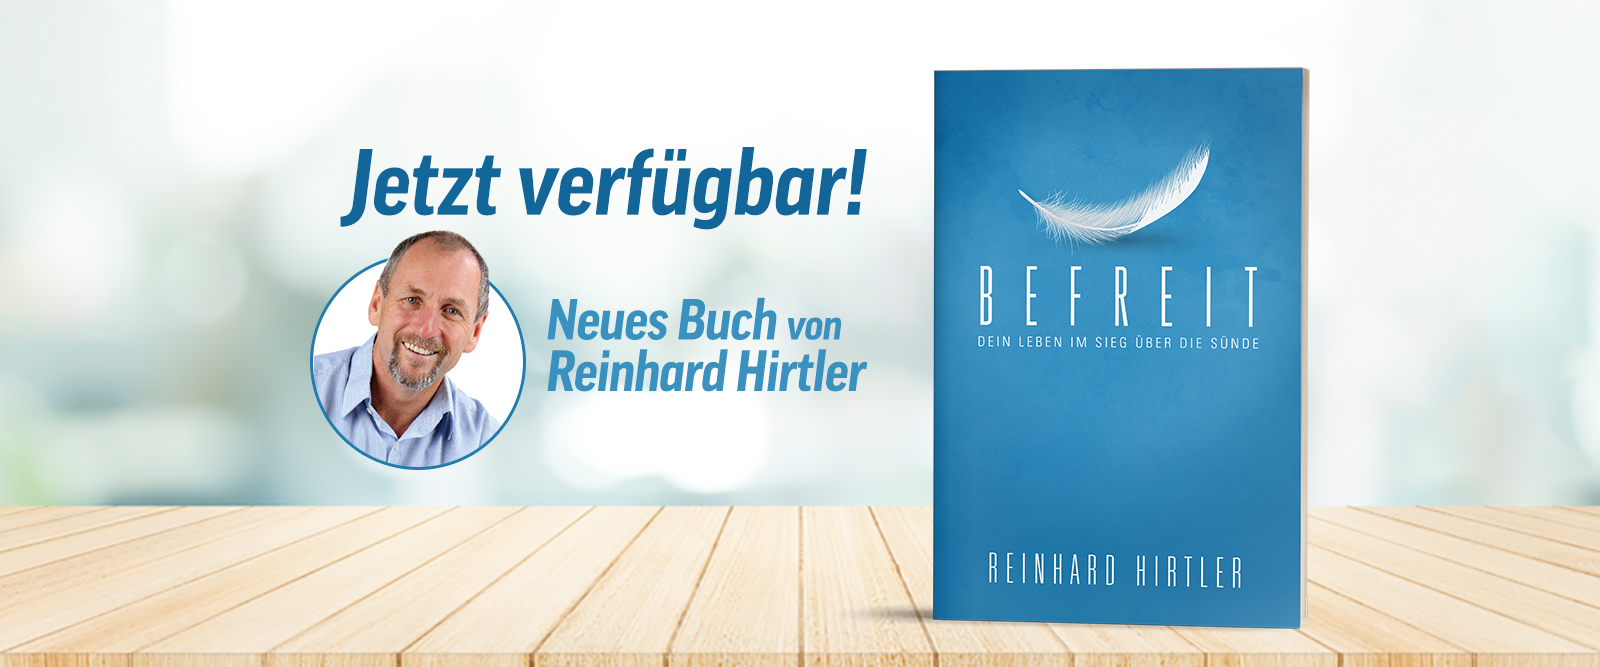 Befreit - Reinhard Hirtler